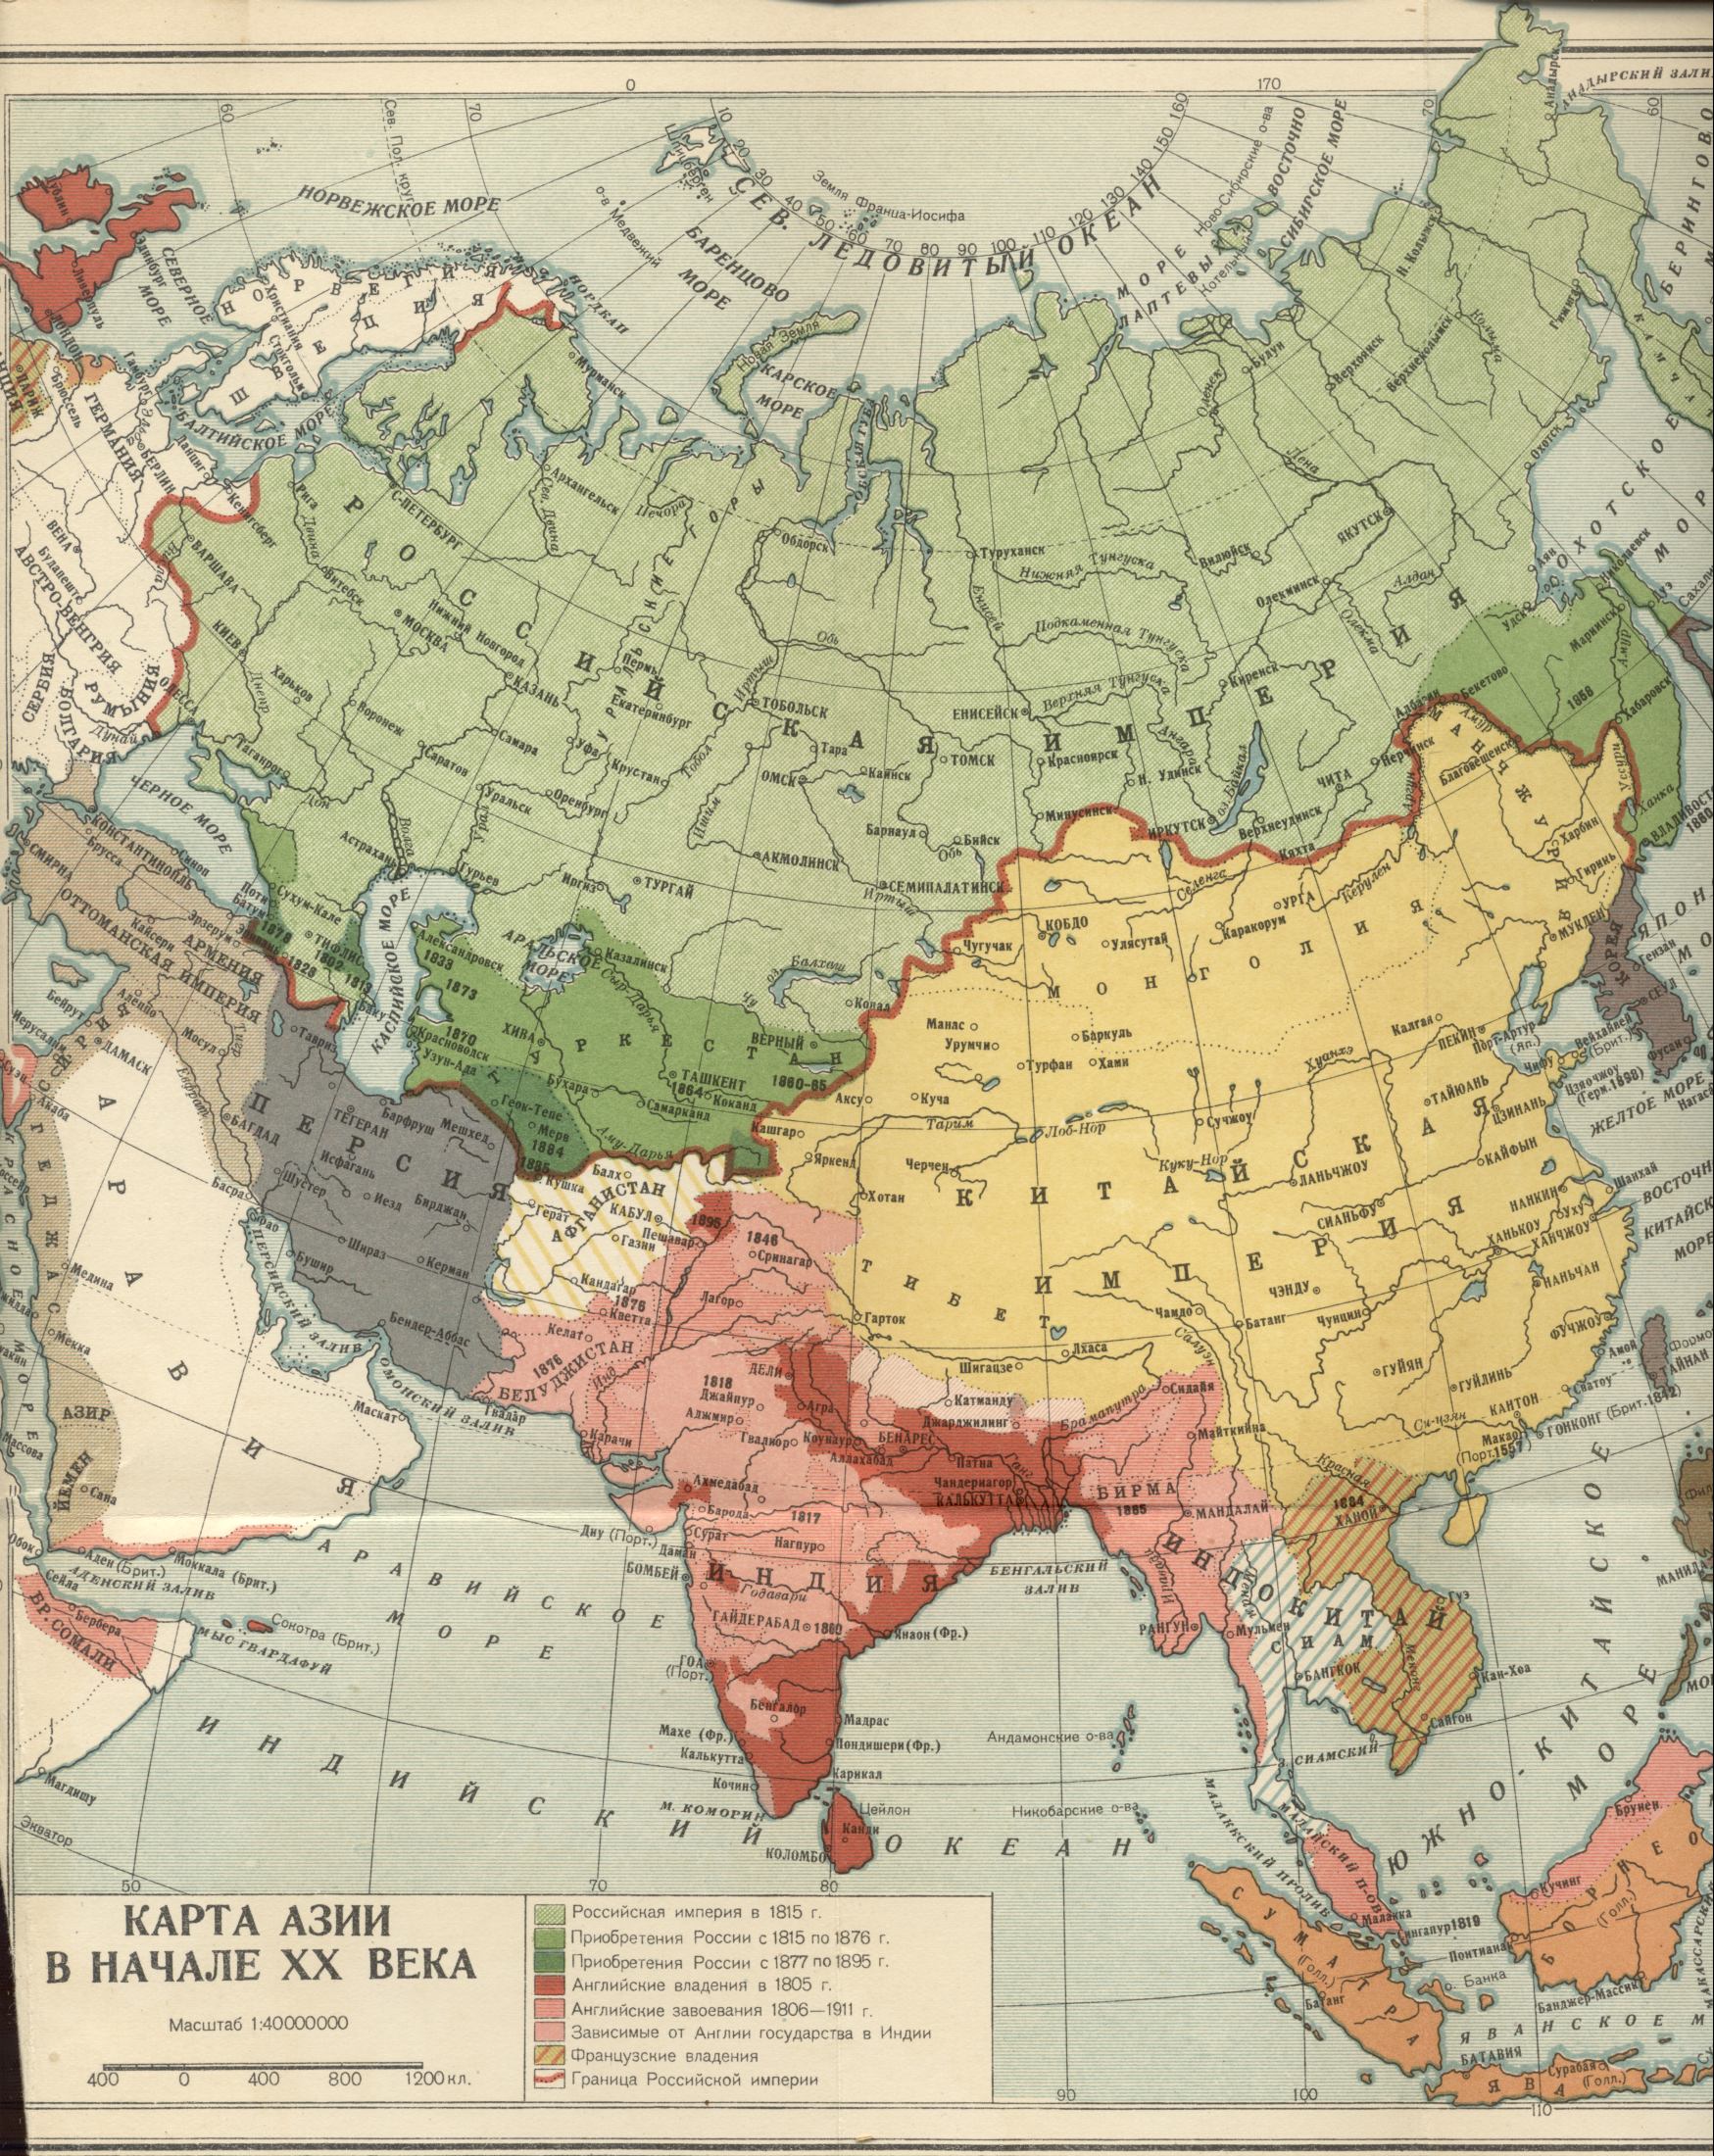 1900. Politische Weltkarte - Karte von Asien im frühen 20. Jahrhundert. Laden Sie eine detaillierte Karte